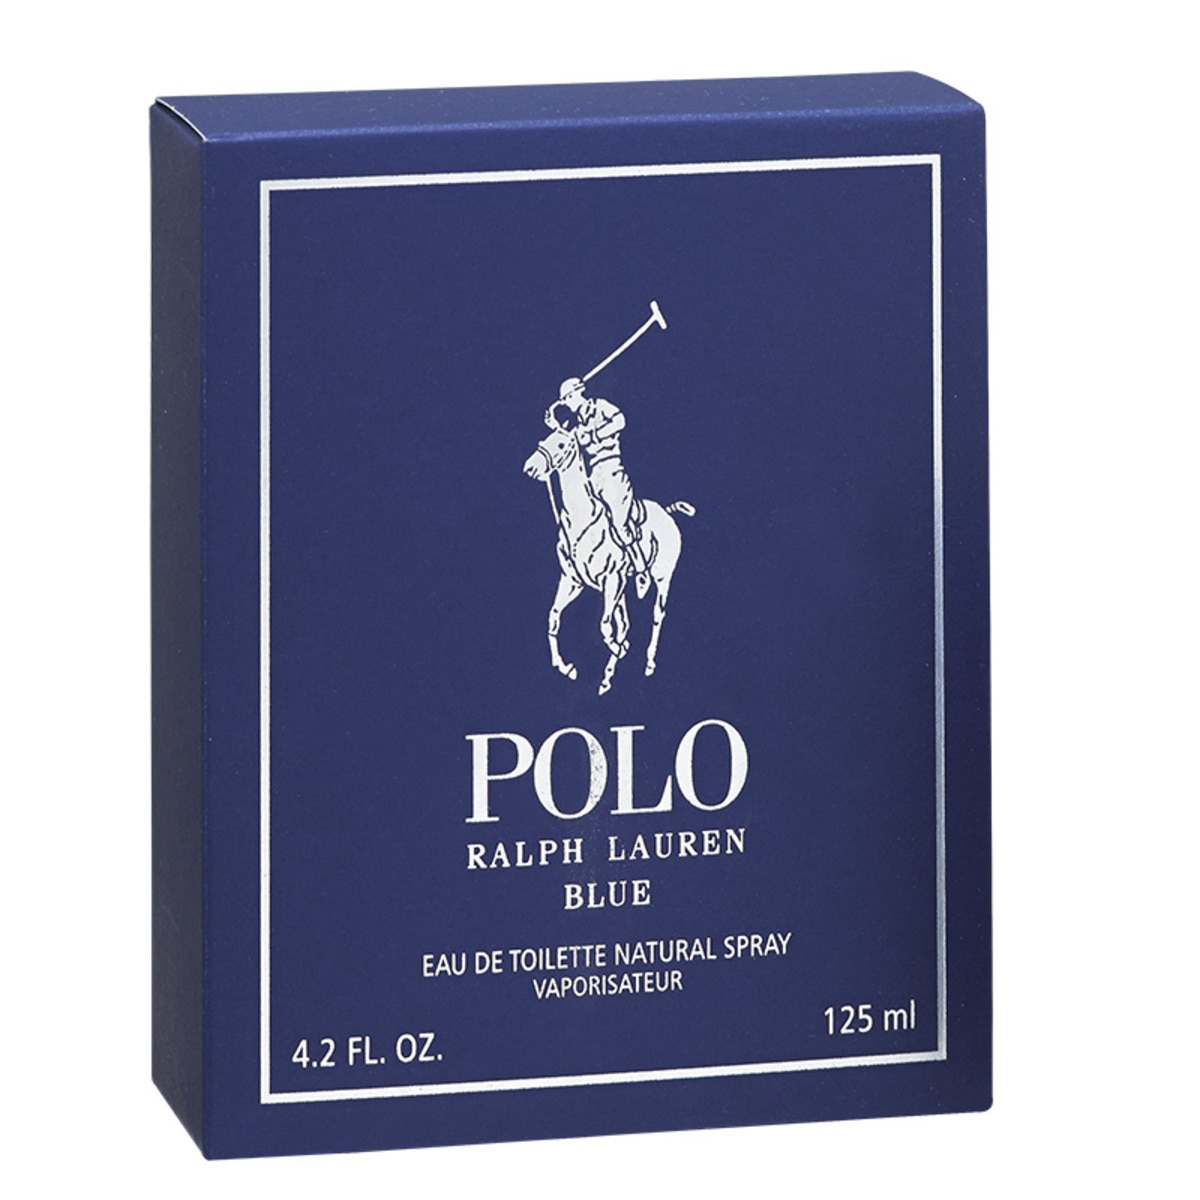 Ralph Lauren Polo Blue 125ml